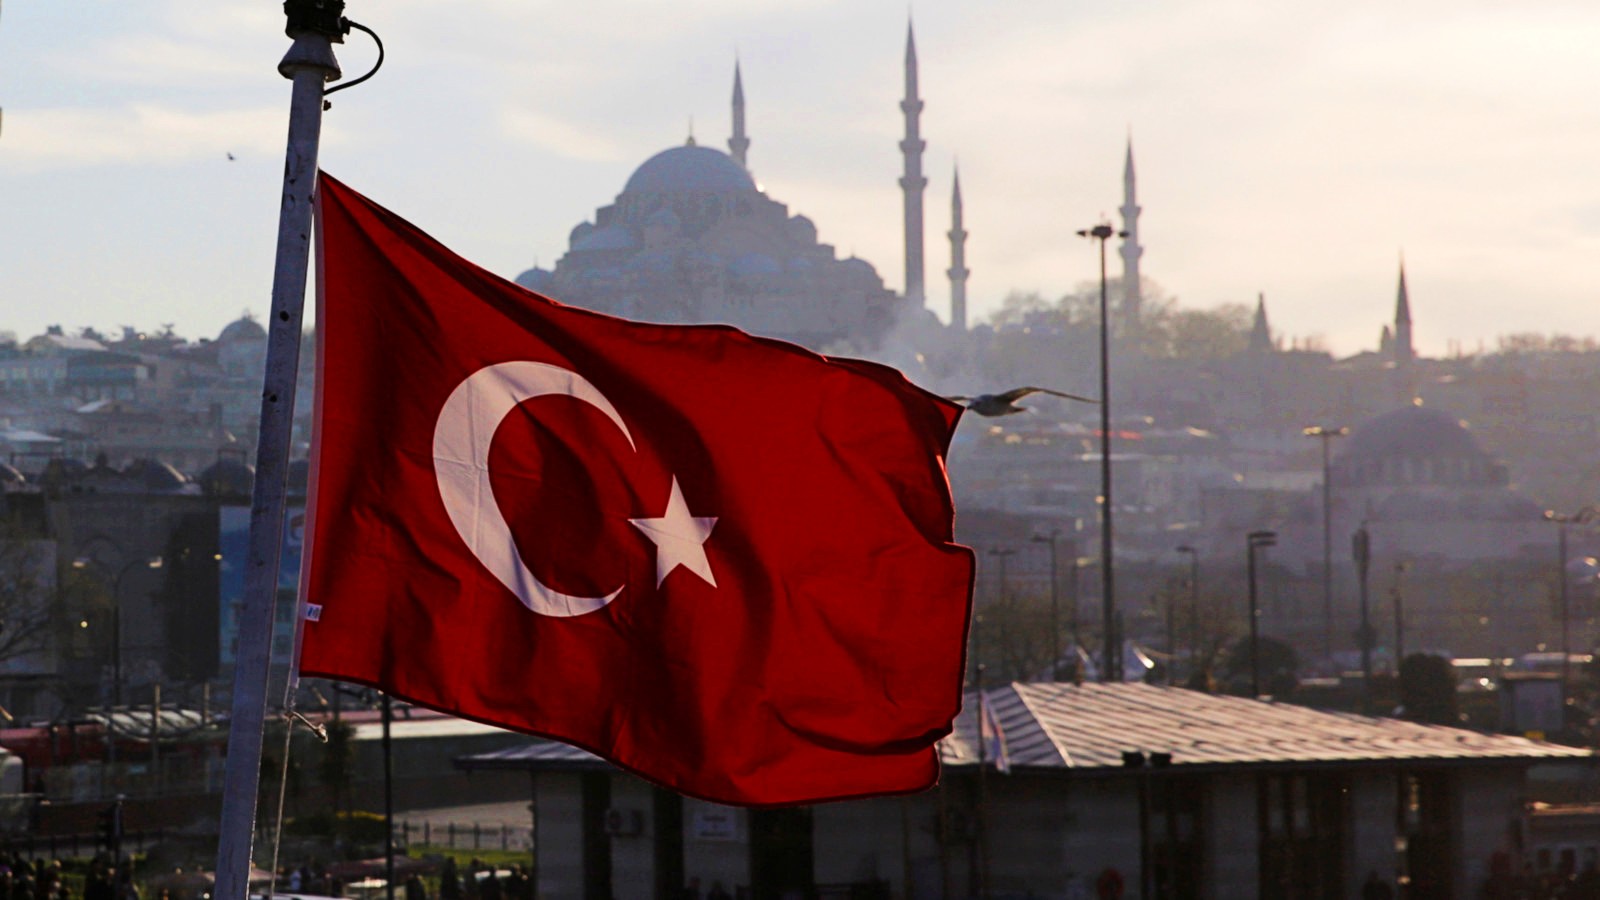 turkey-flag-istanbul-2019-reuters.jpg